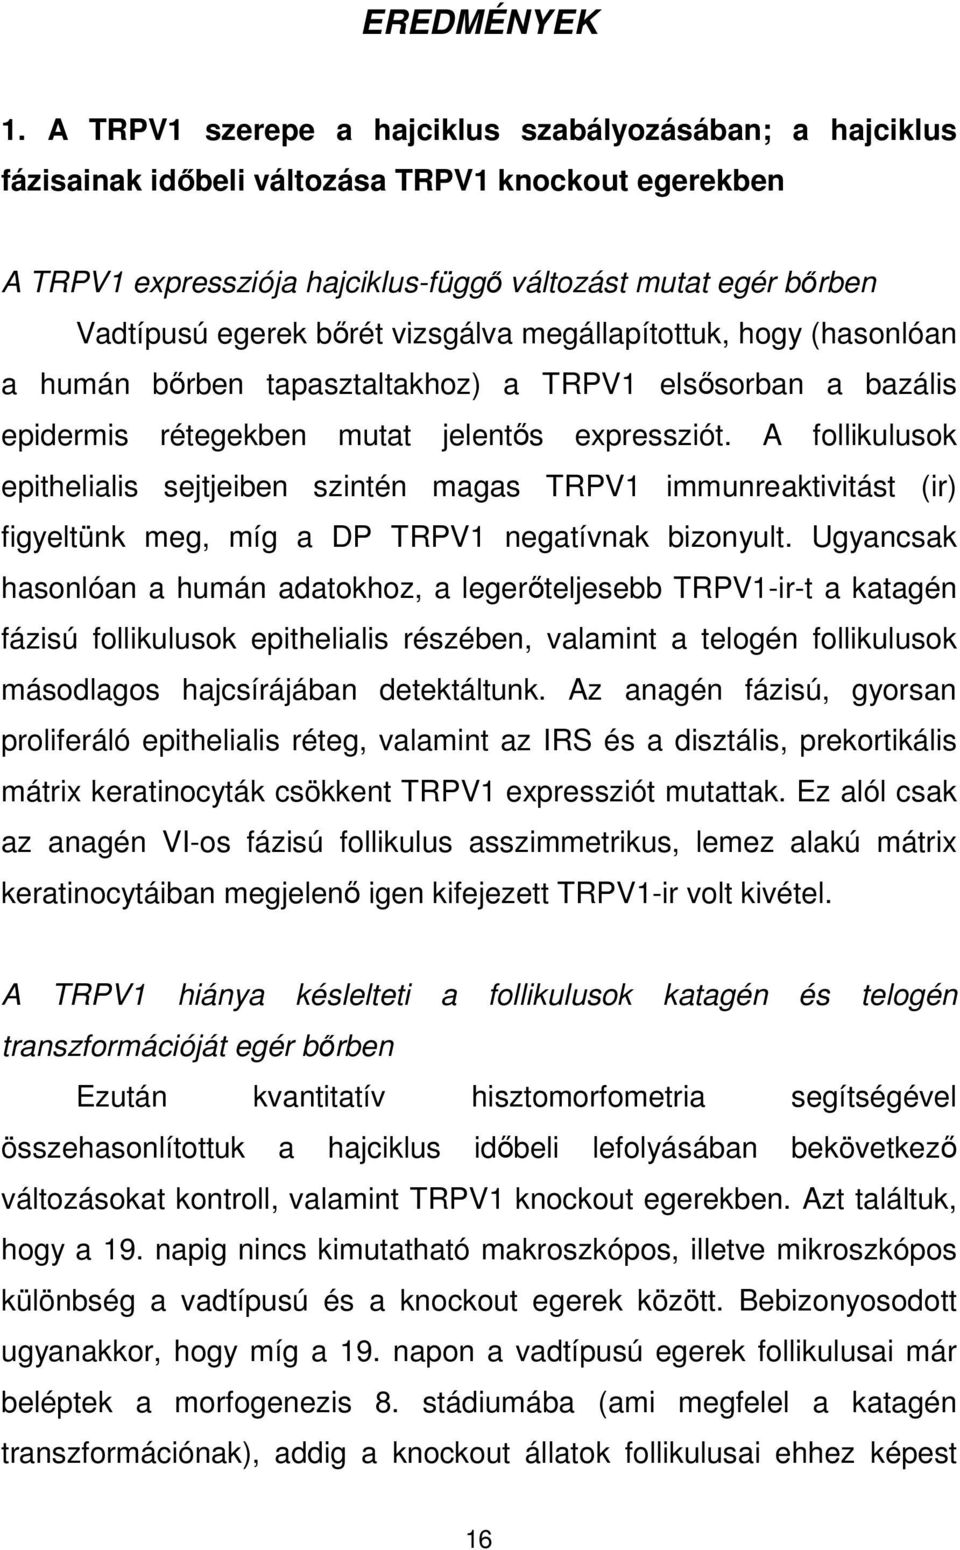 vizsgálva megállapítottuk, hogy (hasonlóan a humán bırben tapasztaltakhoz) a TRPV1 elsısorban a bazális epidermis rétegekben mutat jelentıs expressziót.